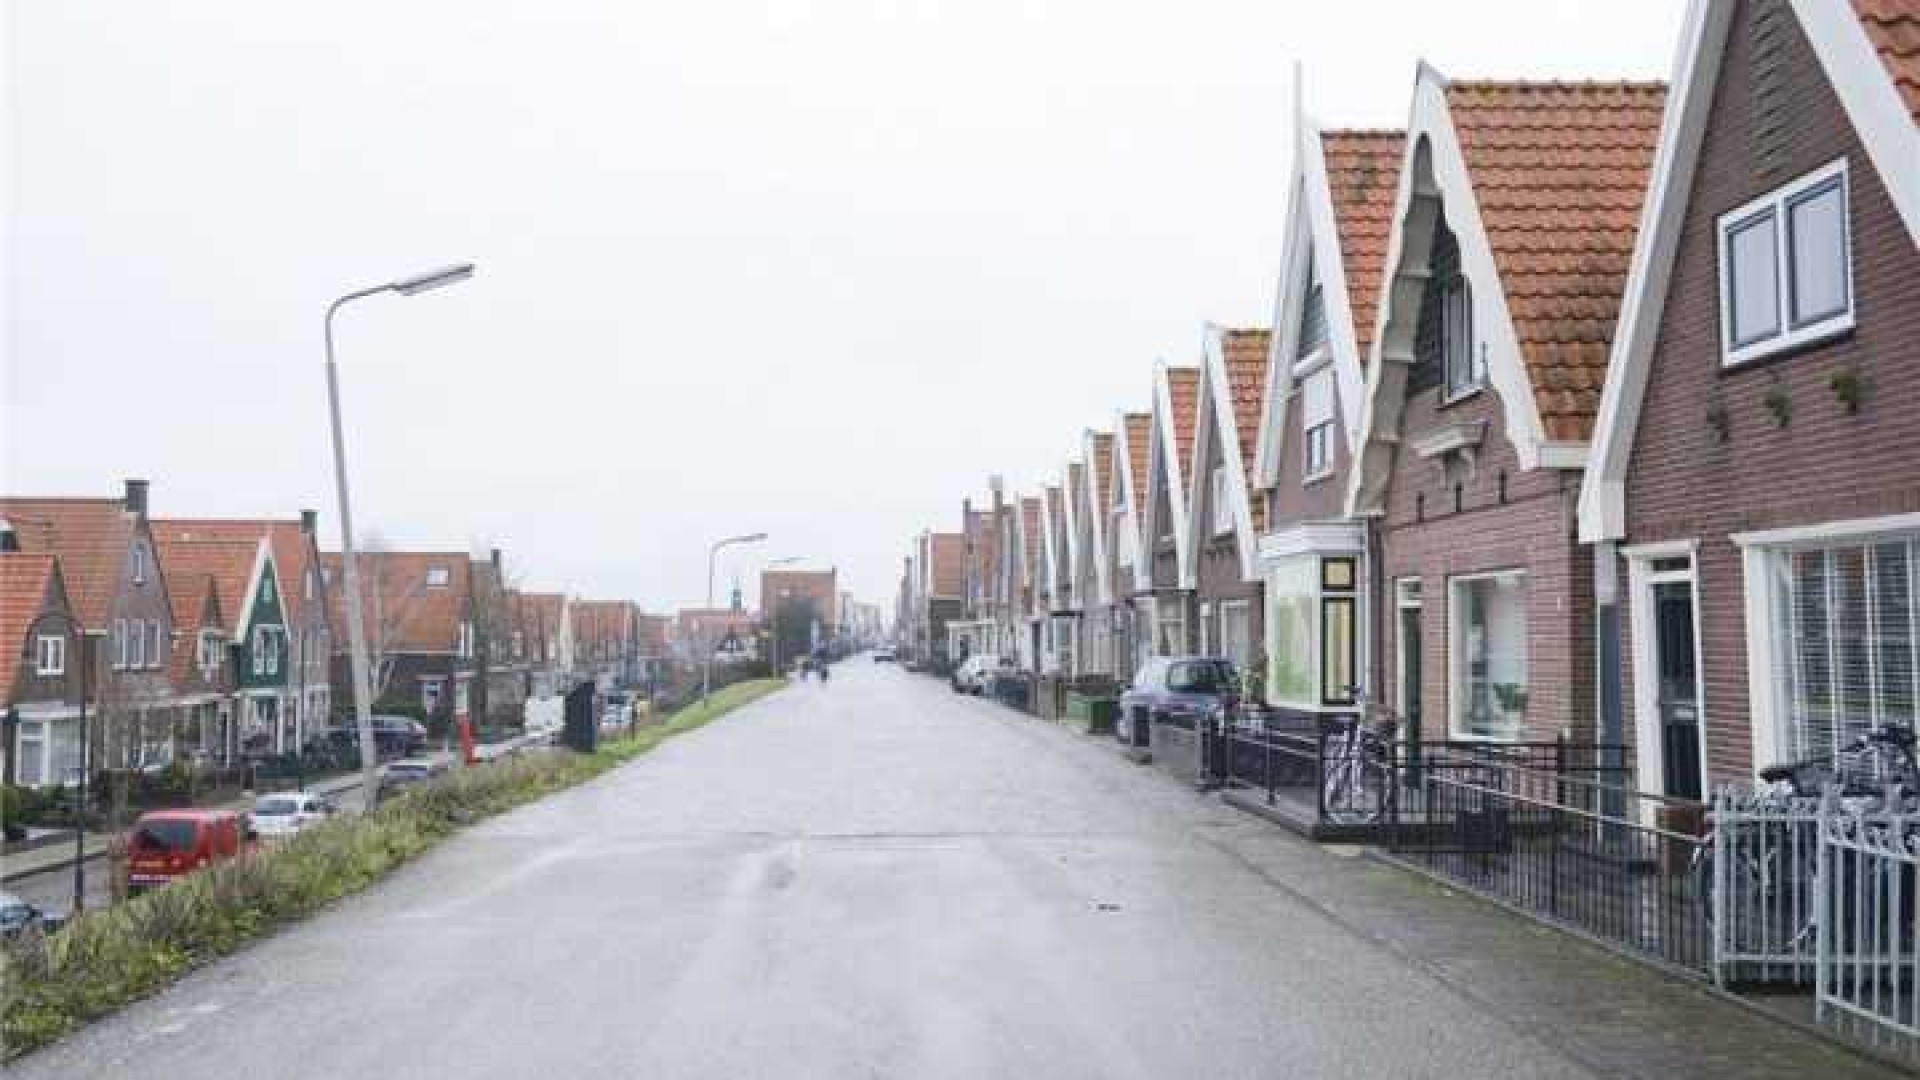 Funderingsprobleem nekt verkoop Volendamse huis van Yolanthe. Zie foto's 24